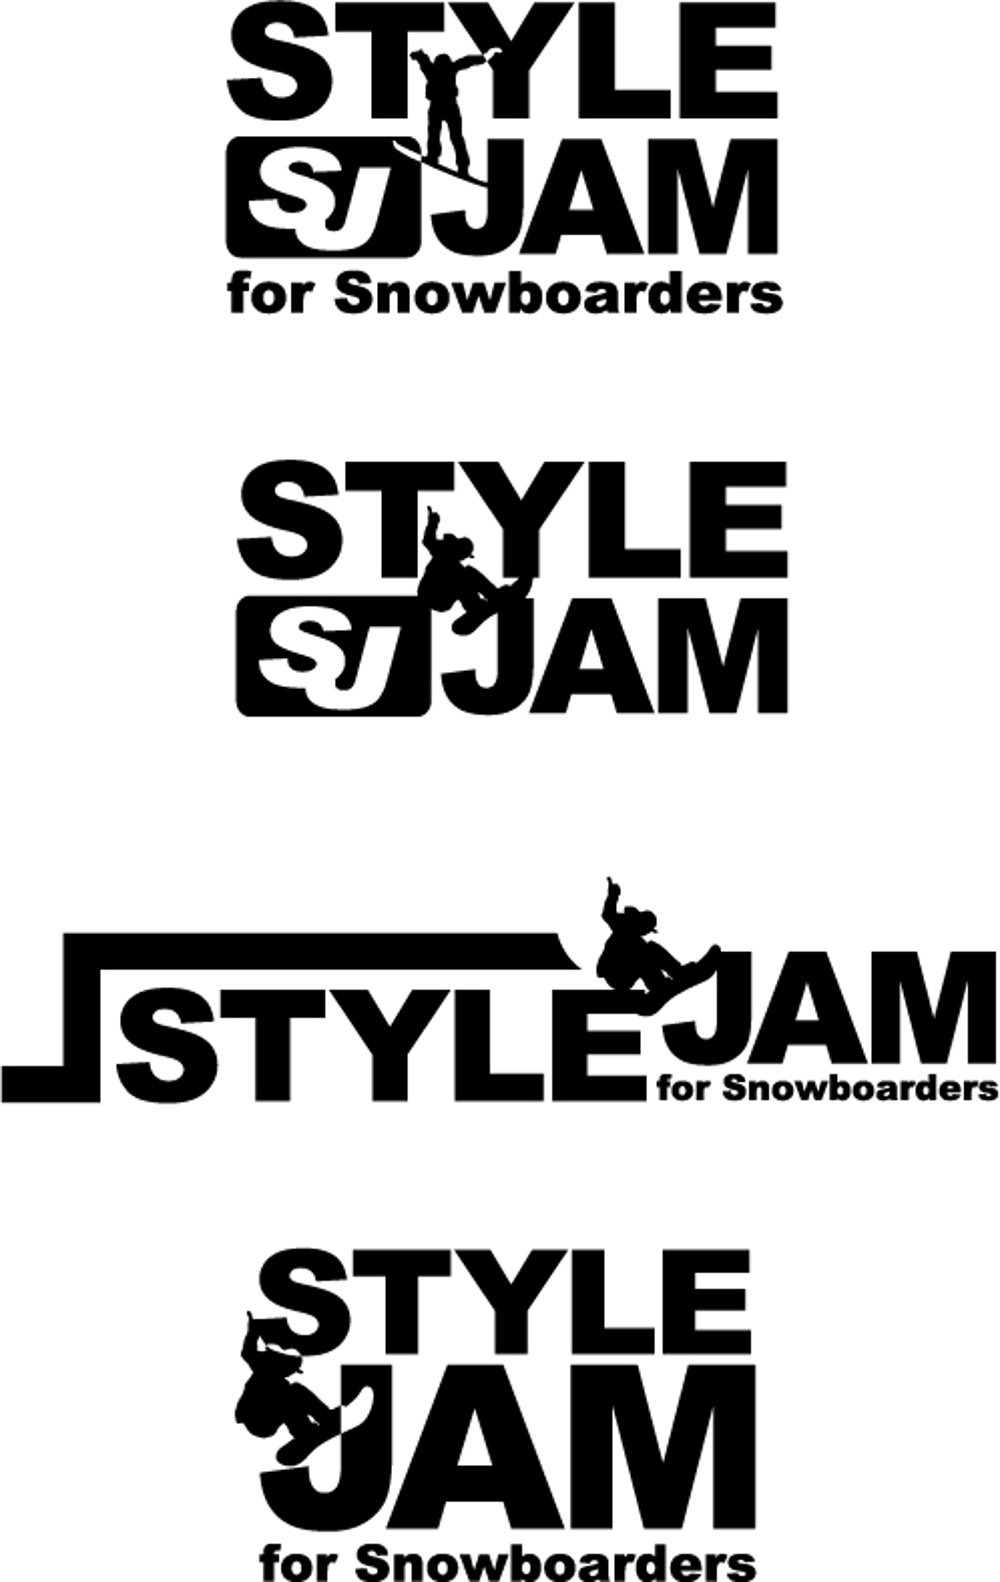 スノーボードサイトのタイトルロゴ